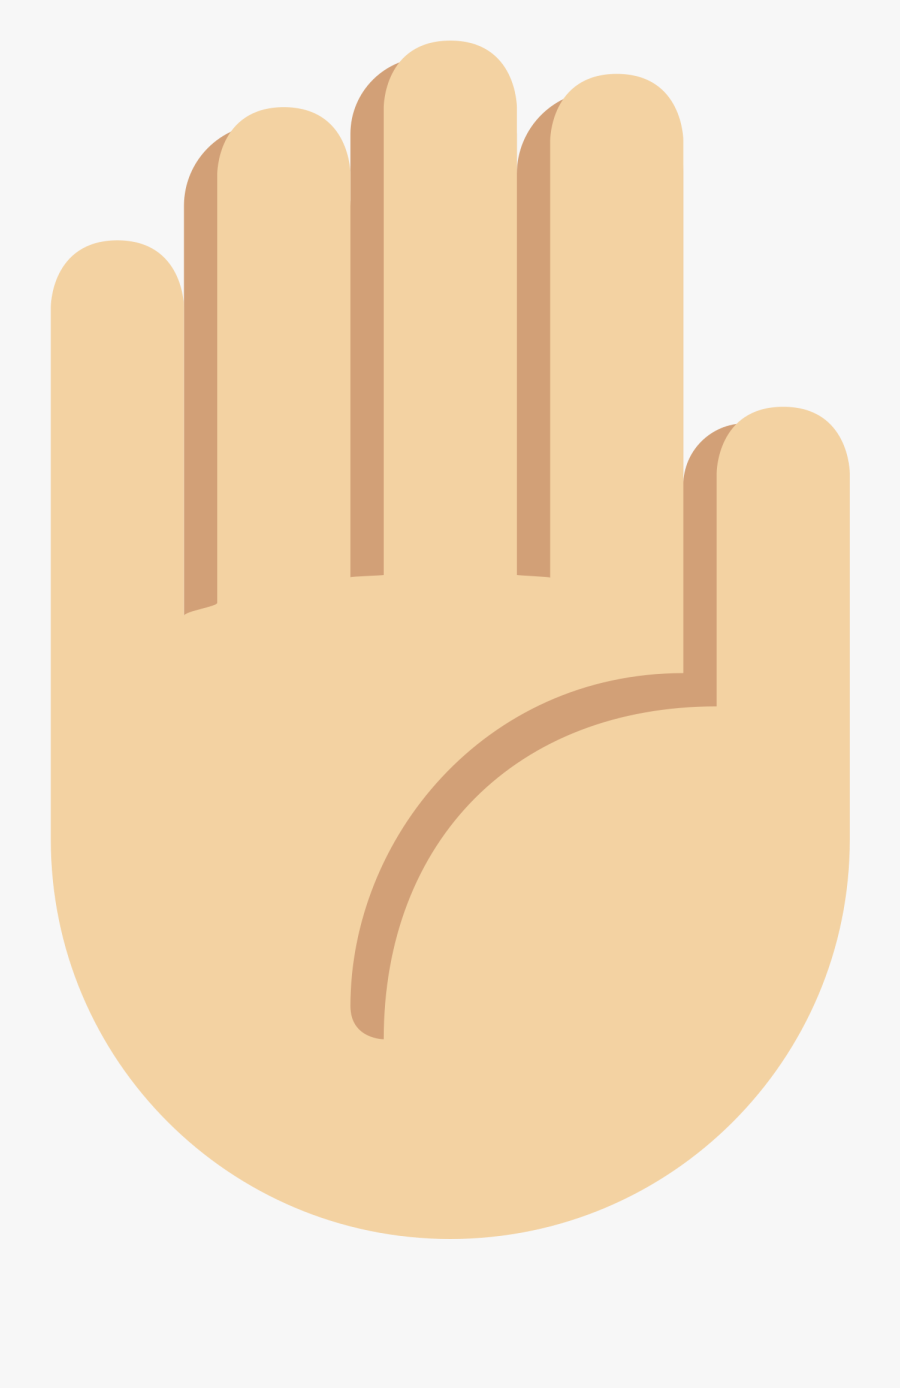 Boi Hand Emoji Png - Illustration, Transparent Clipart